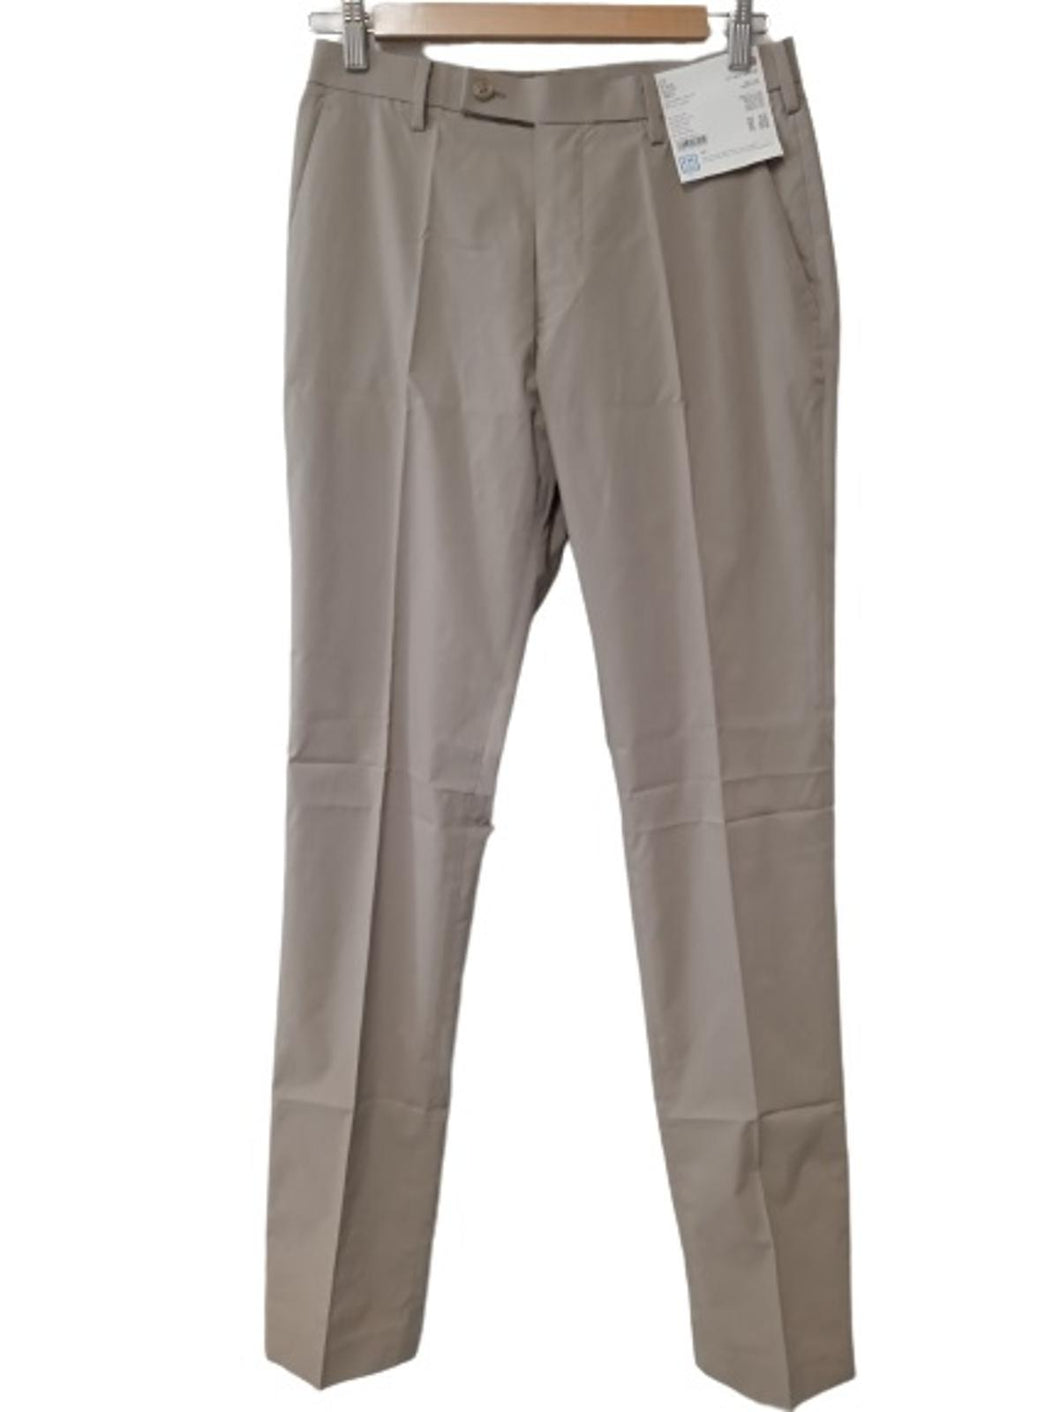 UNIQLO Men's Beige Zip Fly Ultra Light Kando Trousers Size UK W29L34 NEW